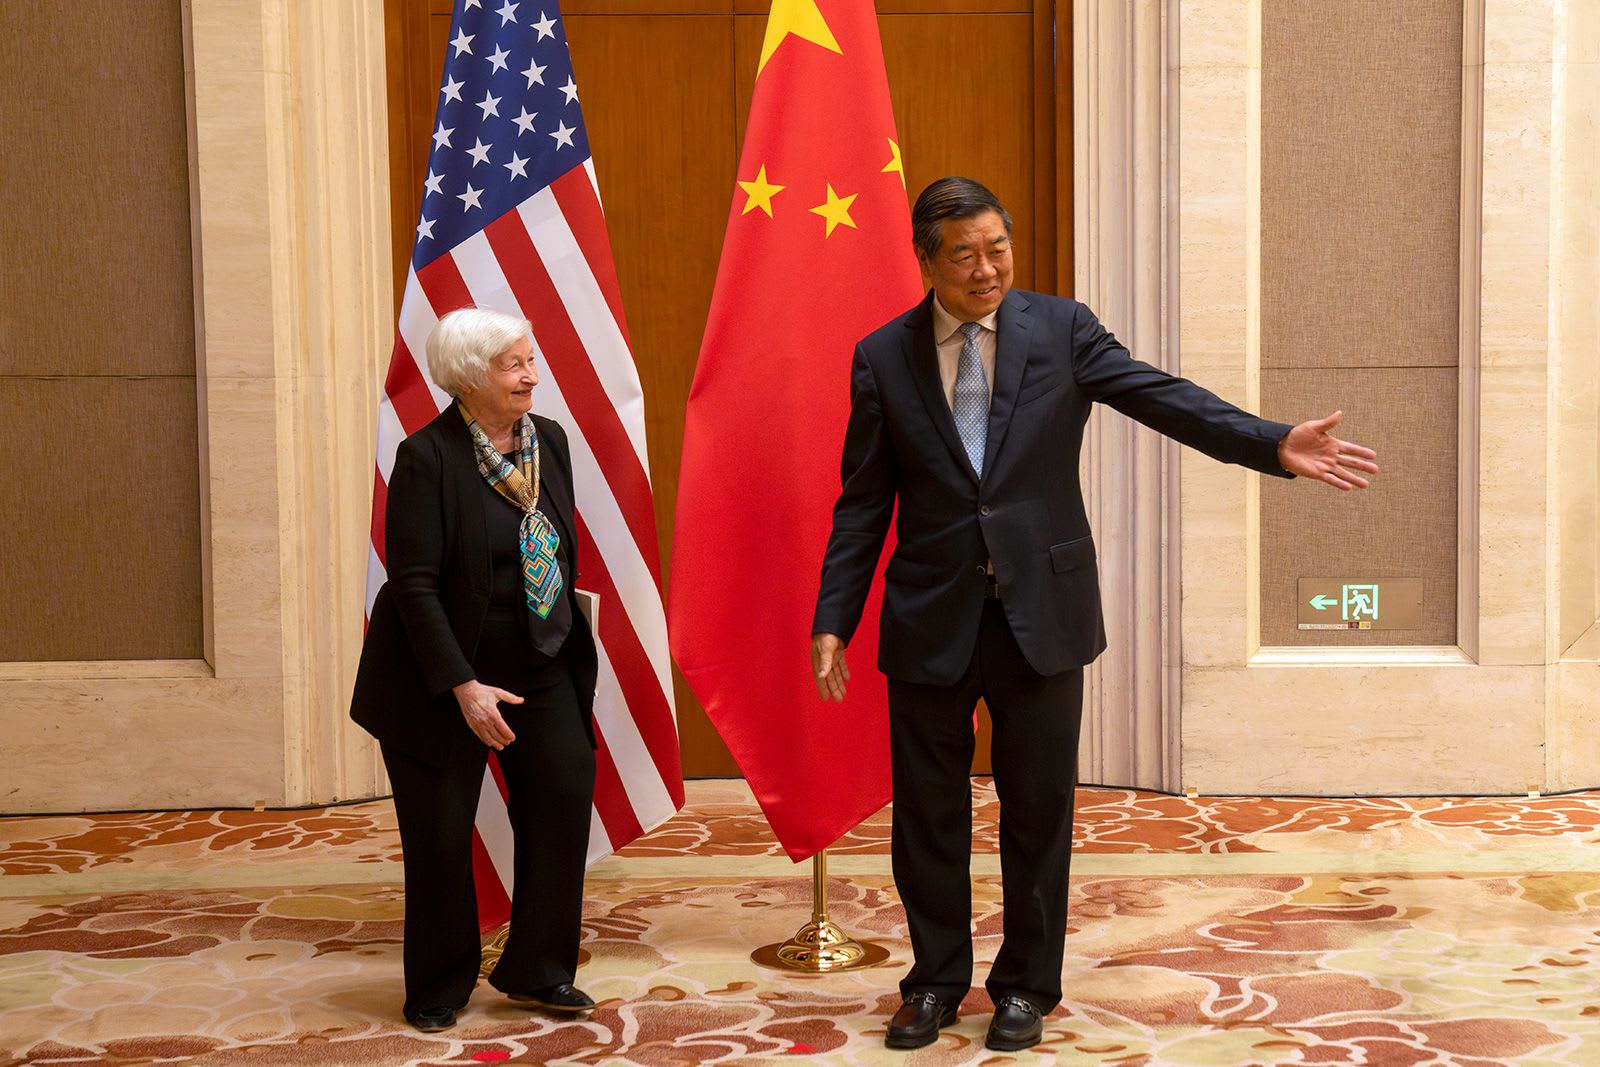 زيارة وزيرة الخزانة الأمريكية إلى الصين